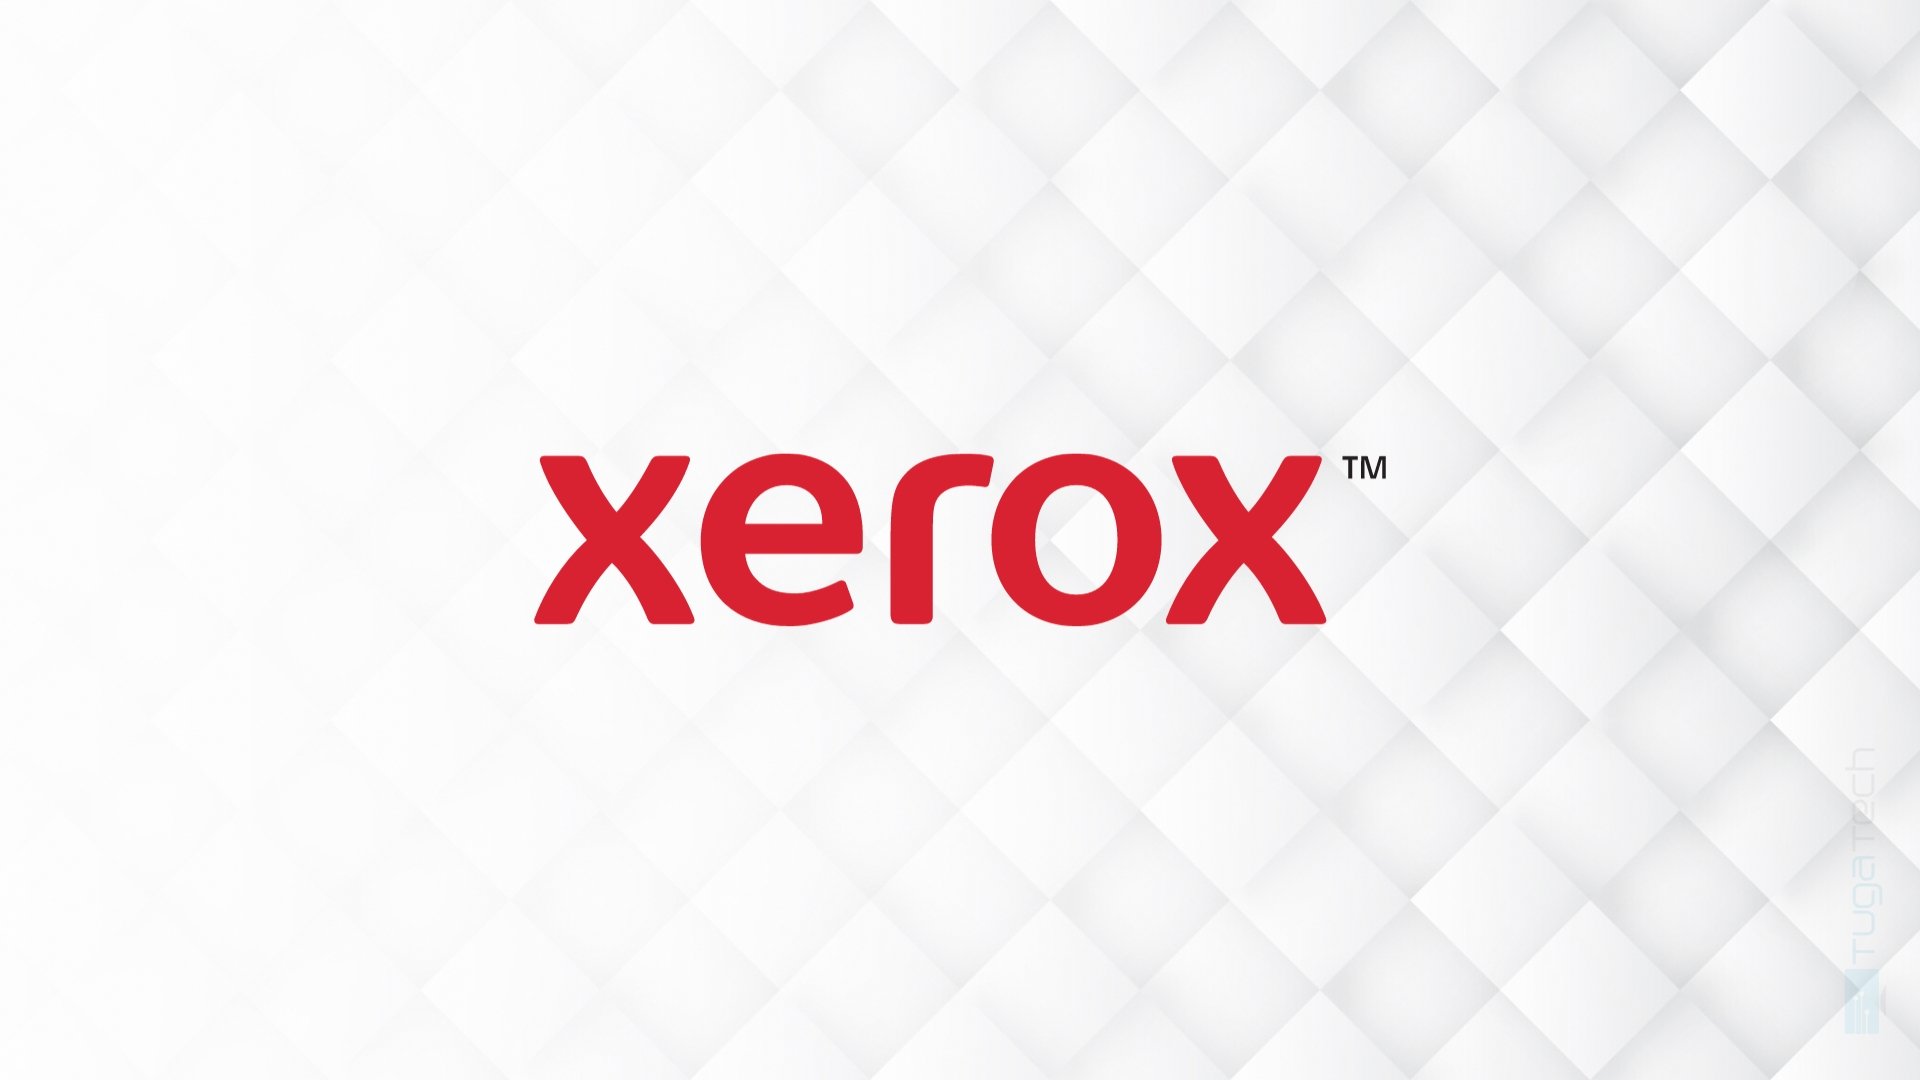 Xerox confirma que vai realizar despedimentos em breve